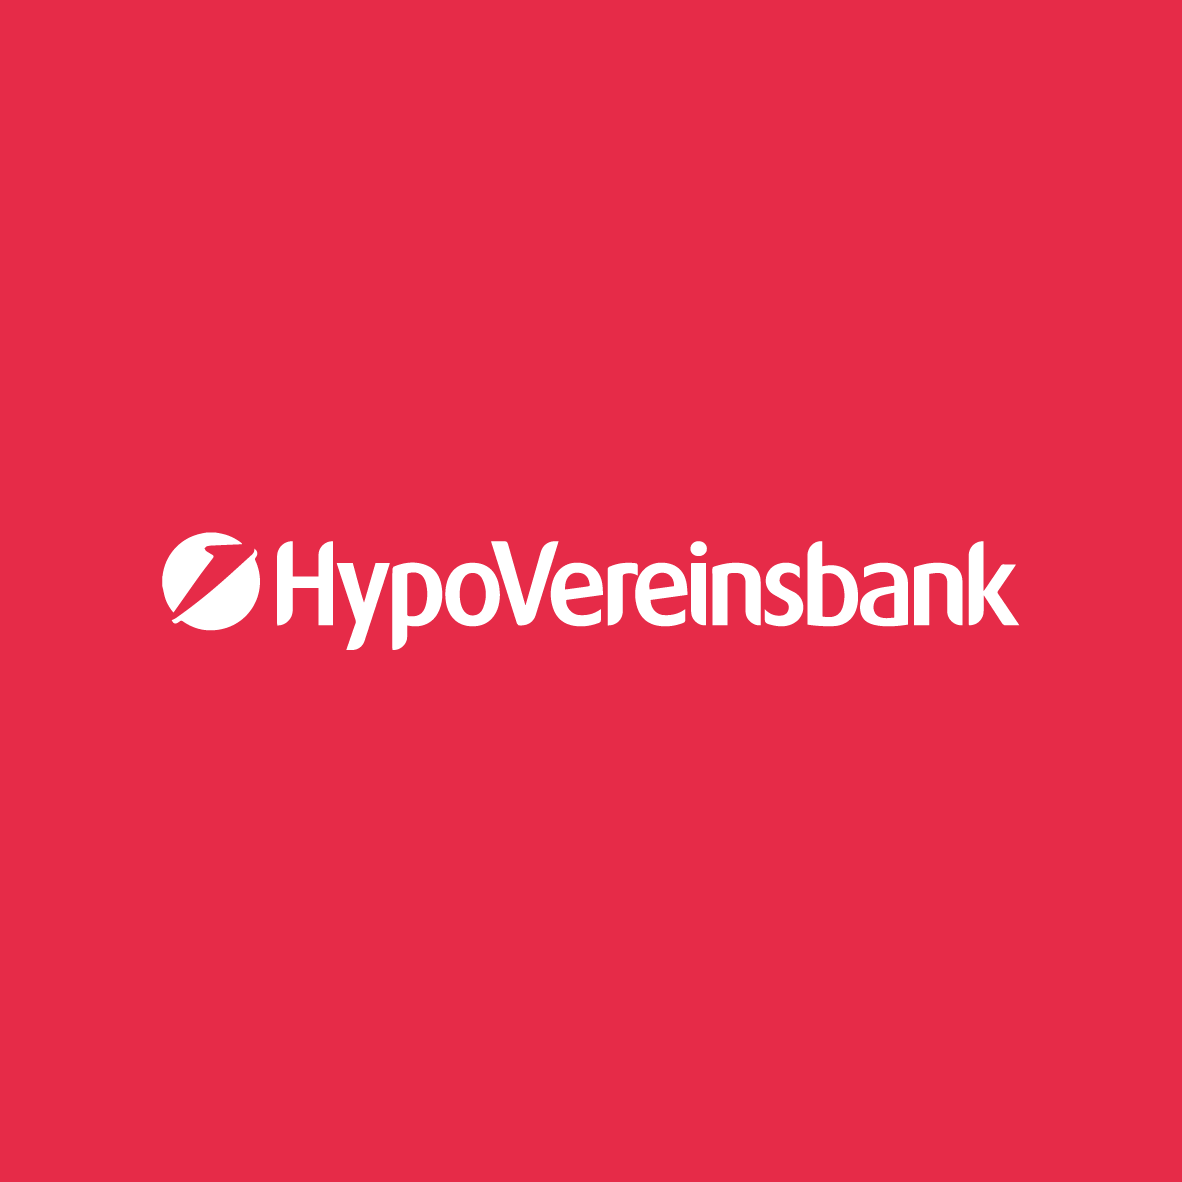 Hypovereinsbank